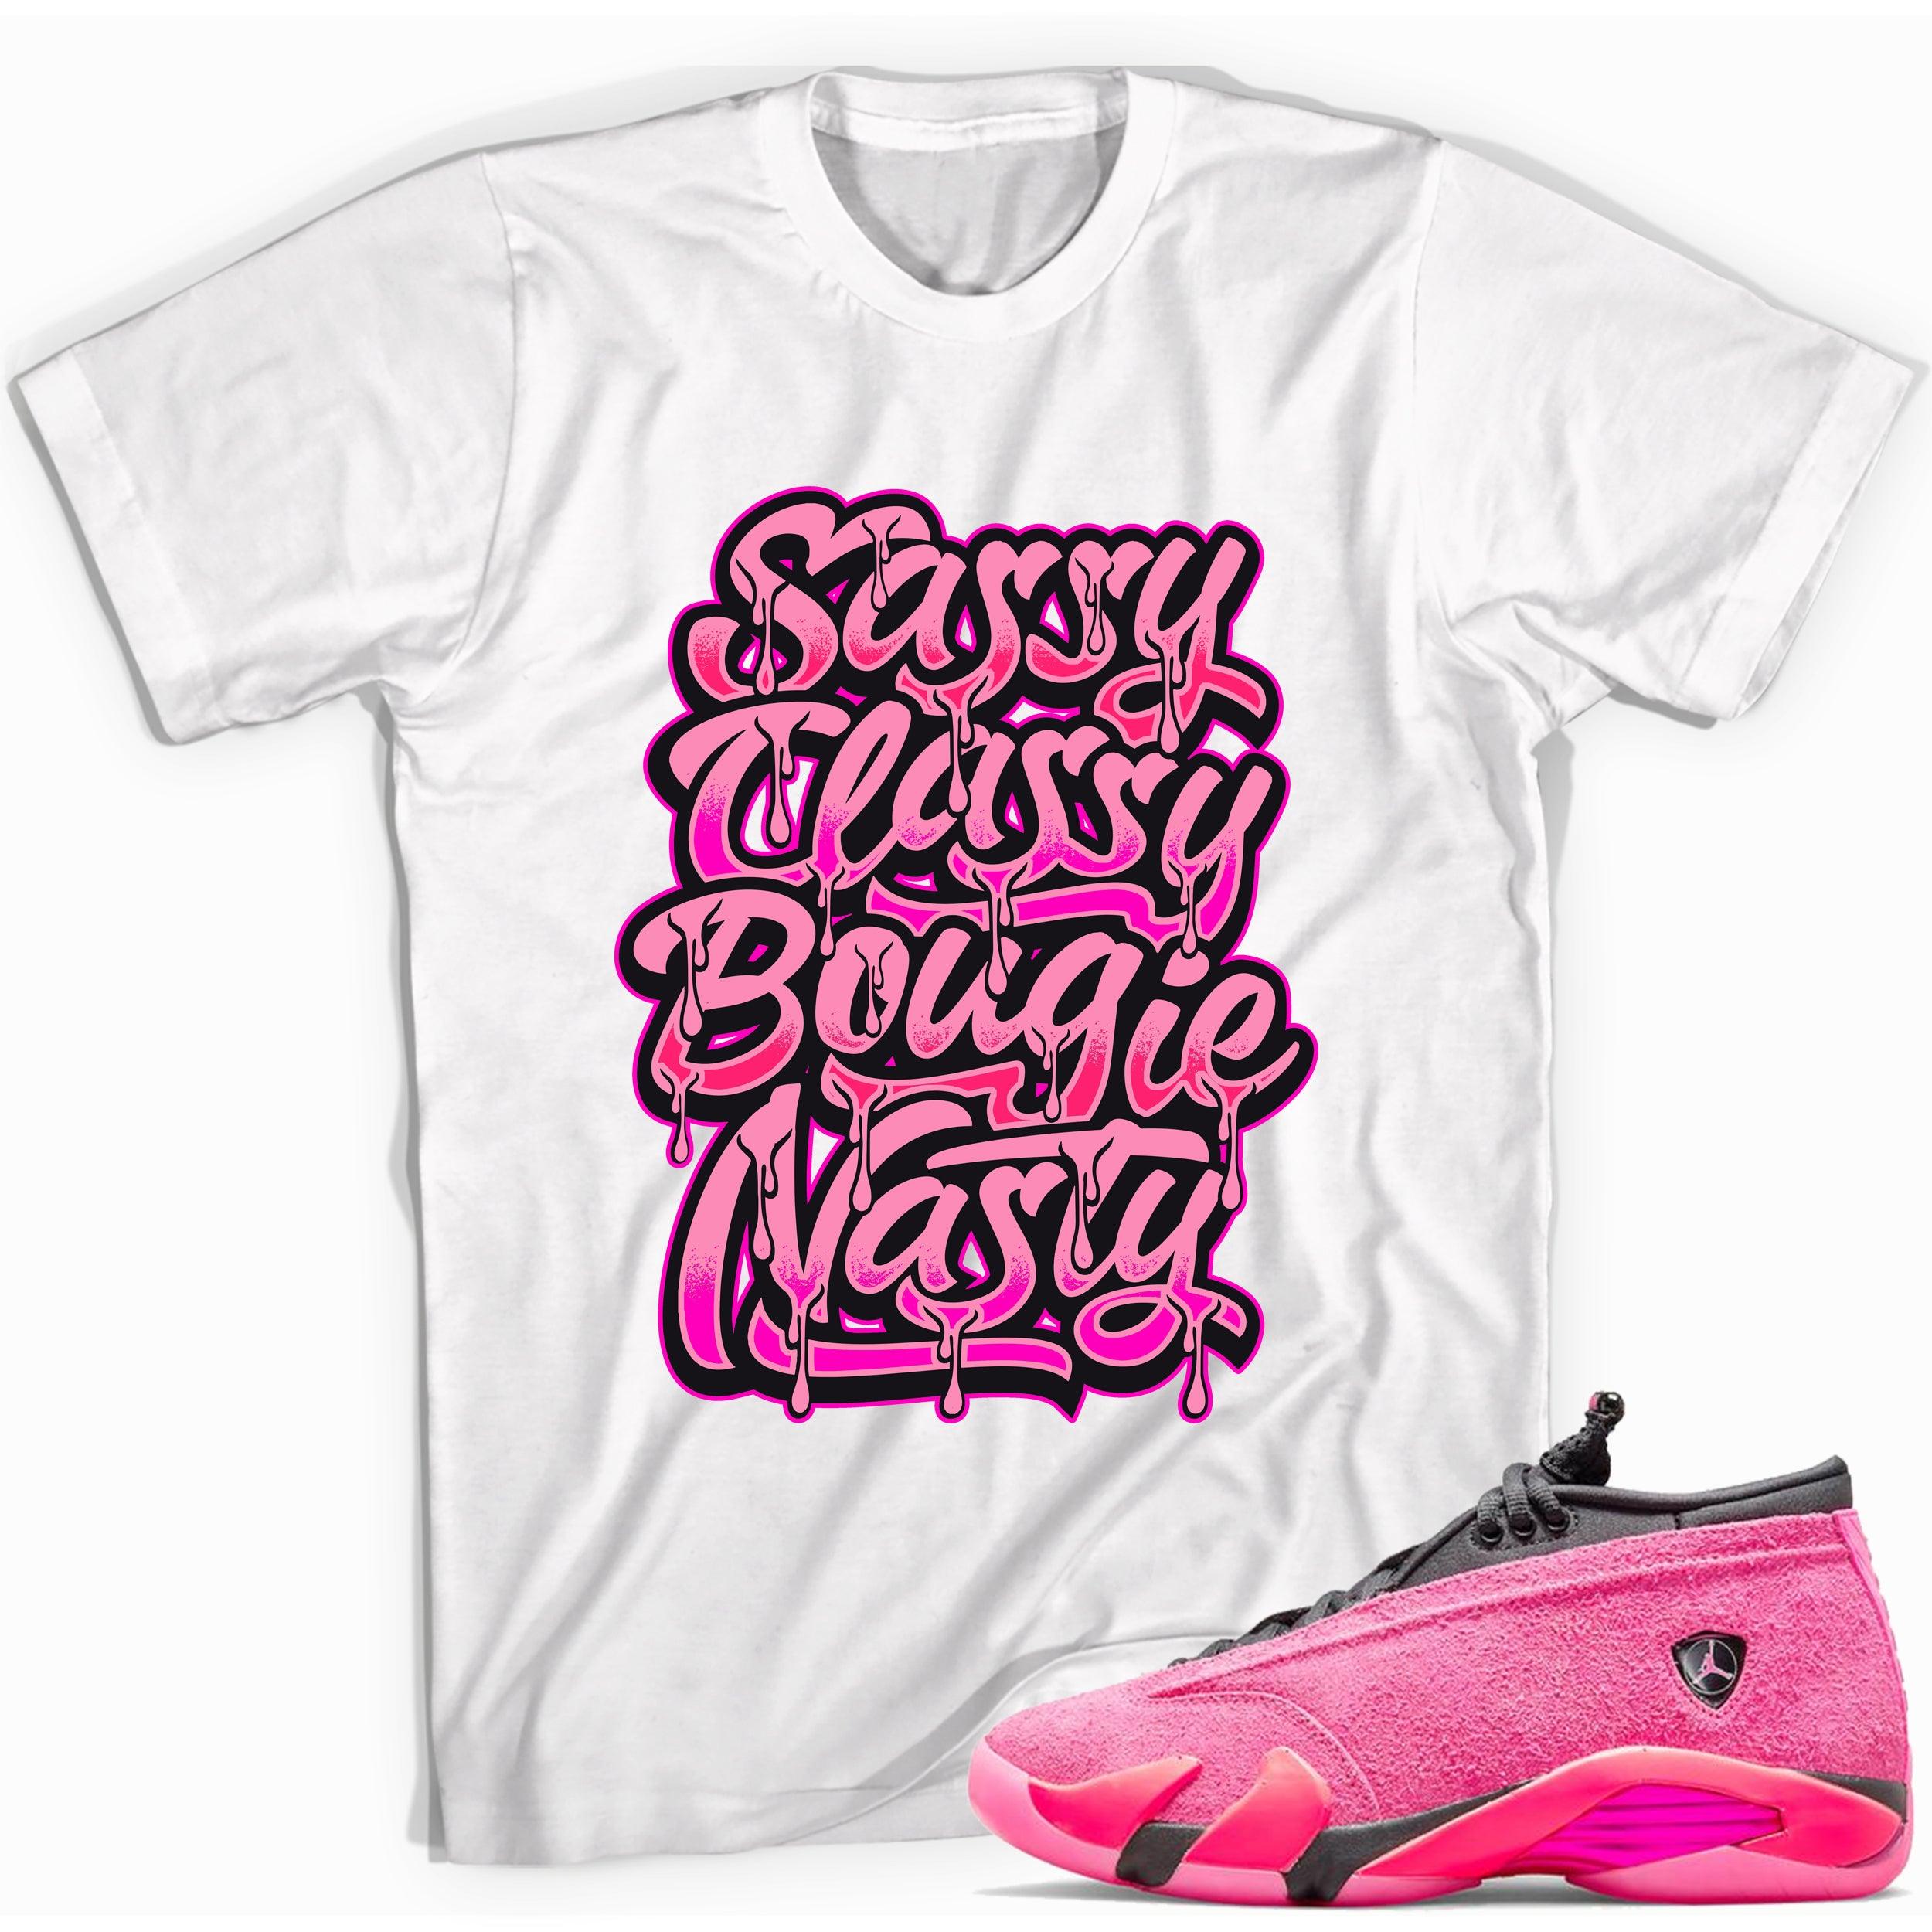 Sassy Classy Shirt Jordan 14s Low Shocking Pink photo